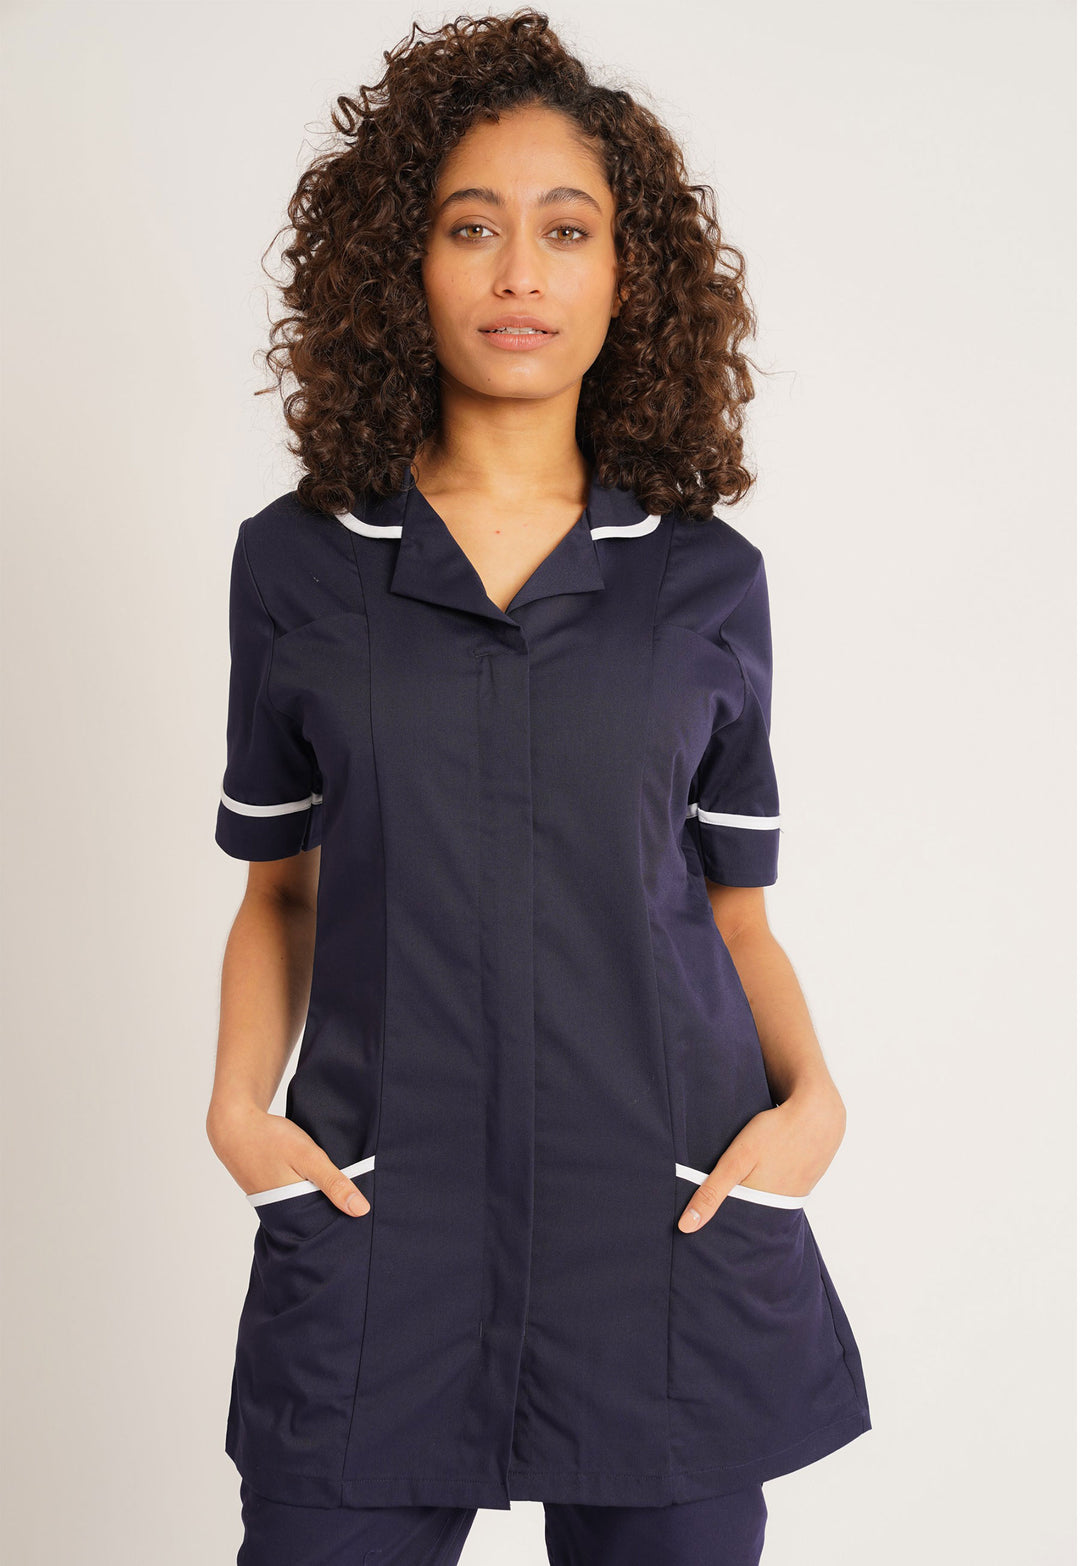 Women's Nurse Tunics